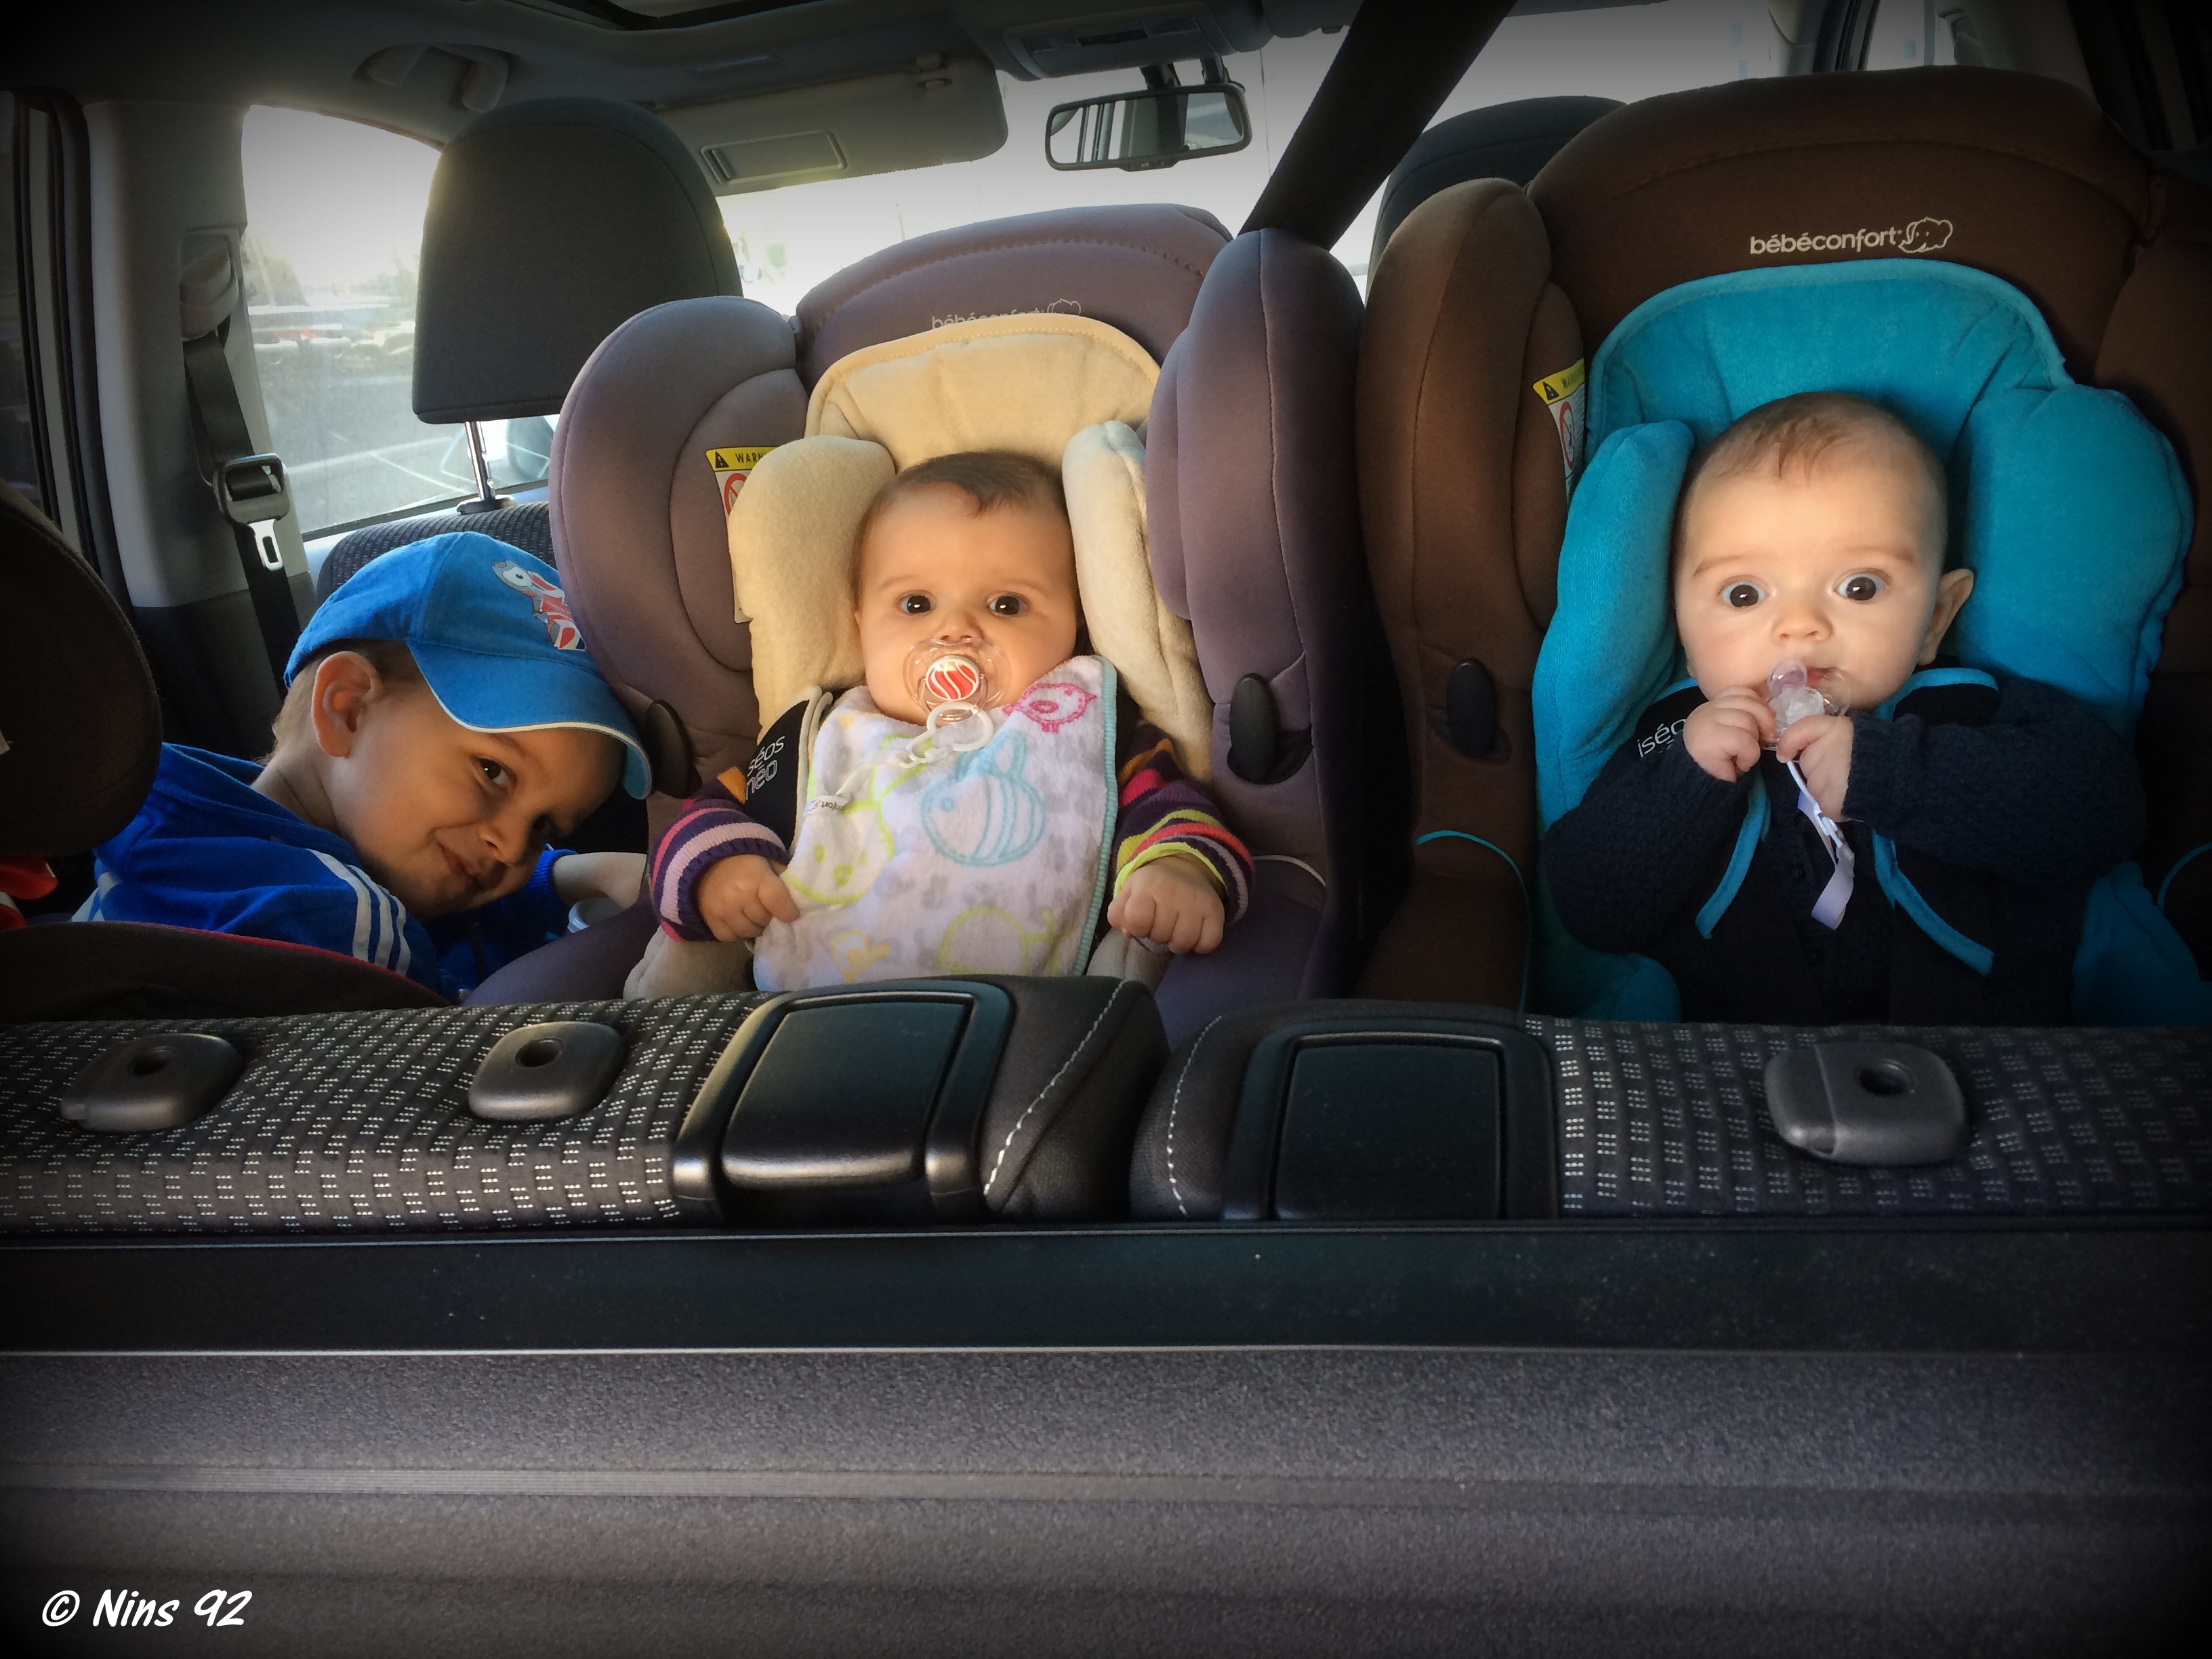 Les sièges auto pour les enfants et les bébés en voiture